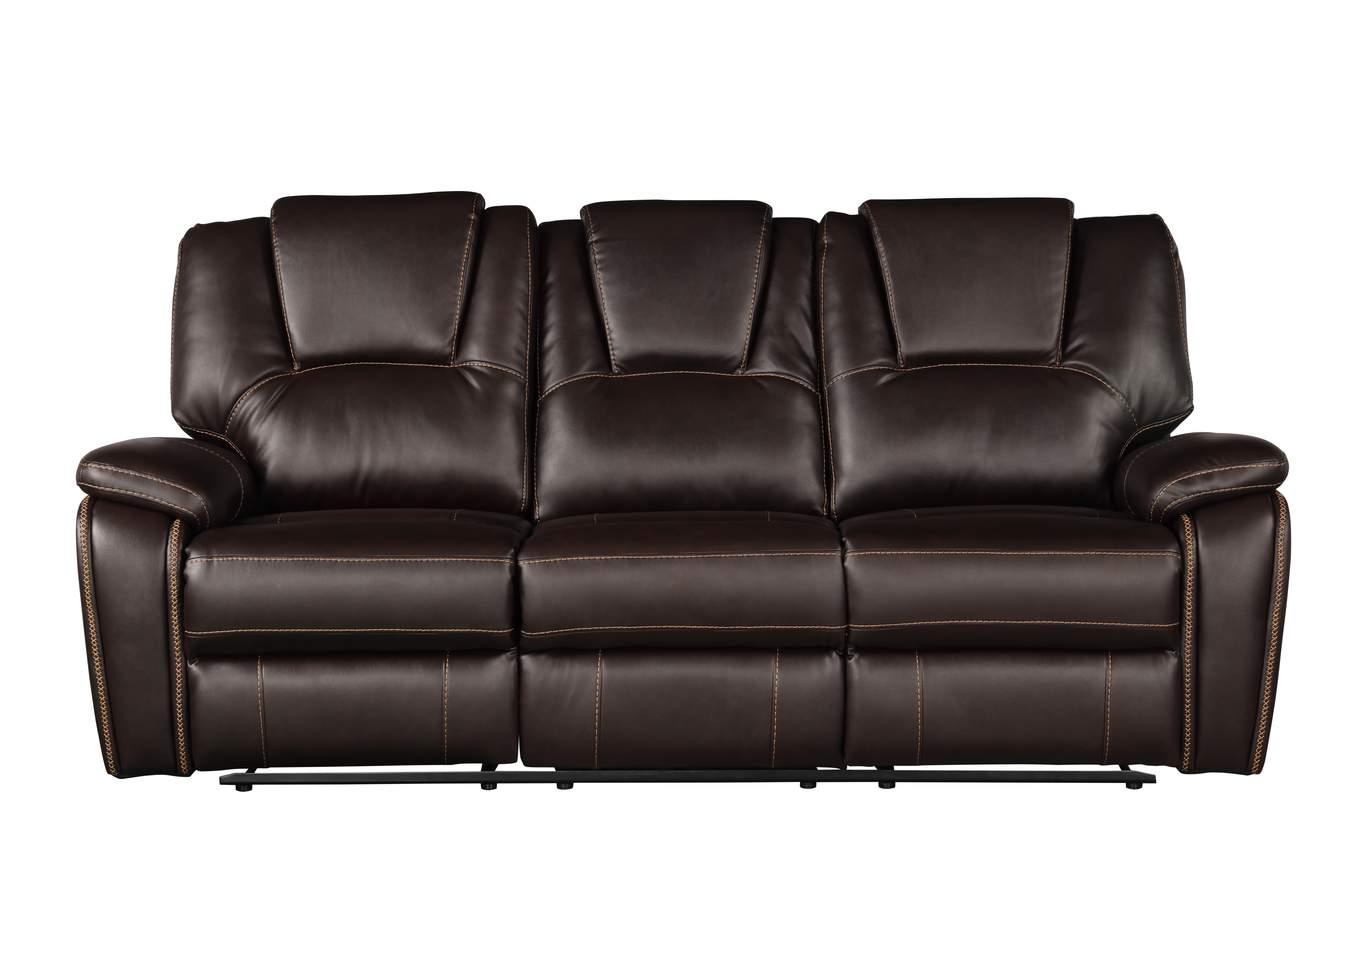 Galaxy Home Furniture HONG KONG Brown Recliner Sofa Set